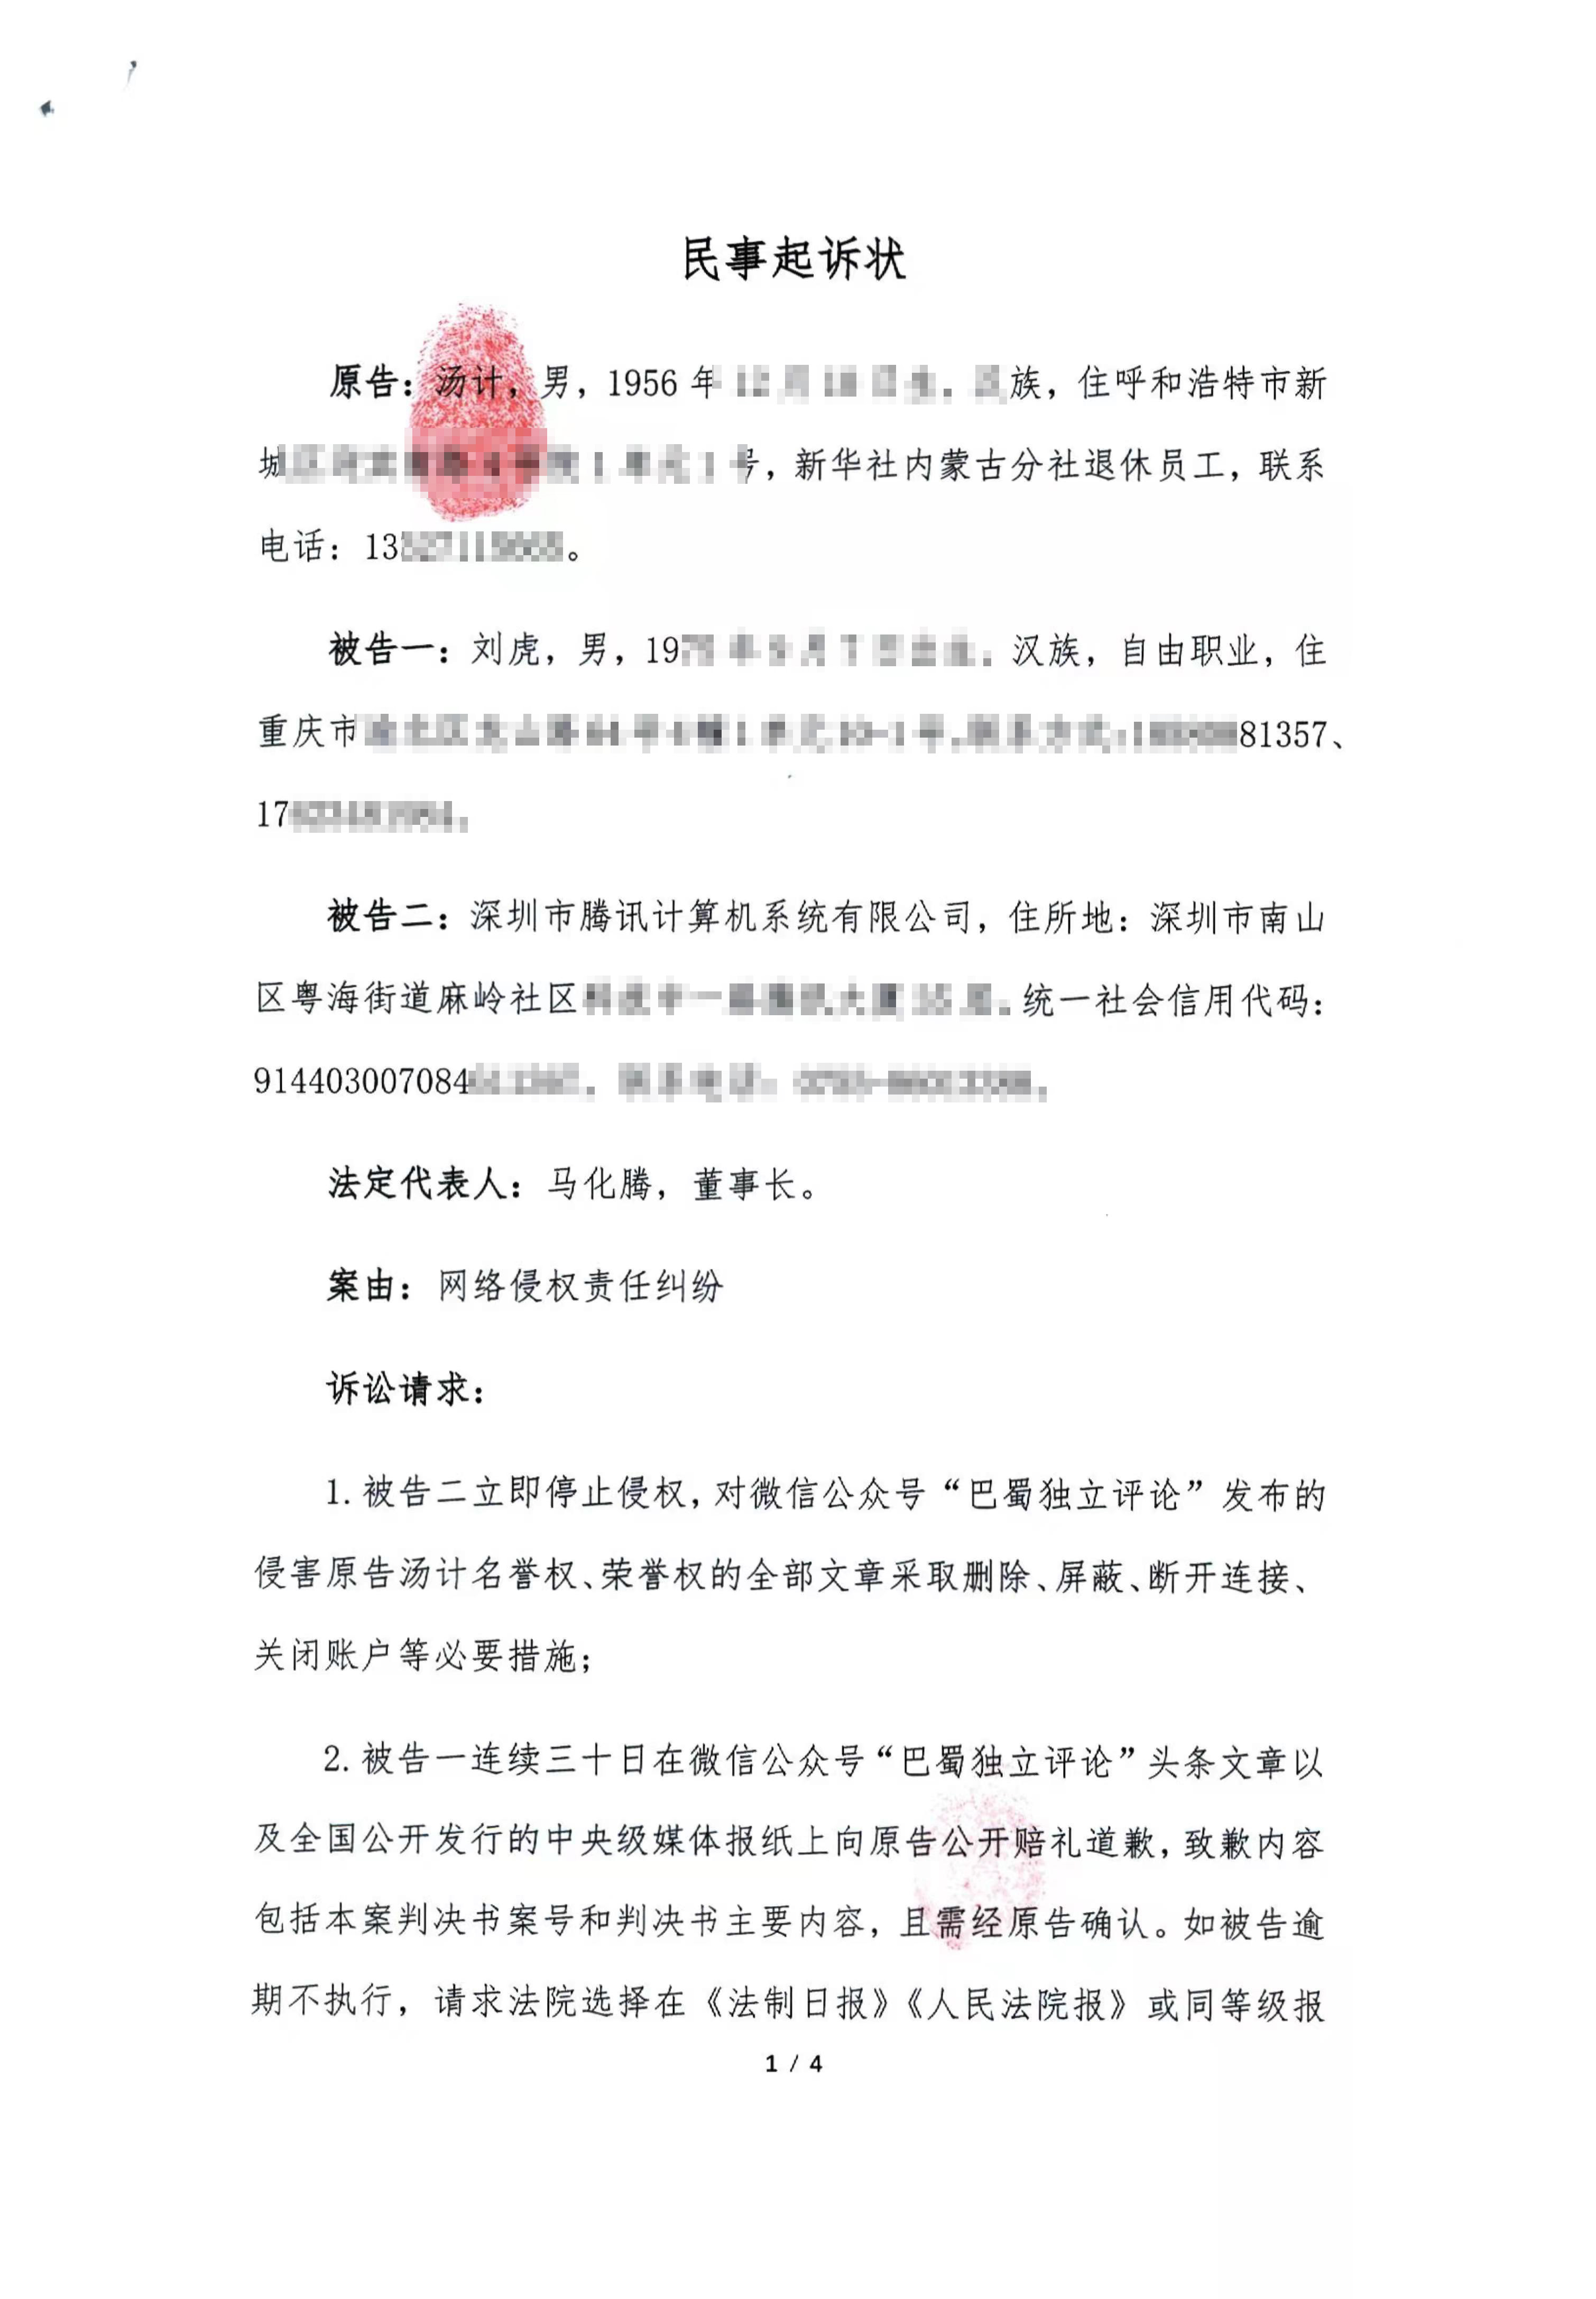 汤计起诉腾讯公司和原媒体人刘虎网络侵权,索赔160万元